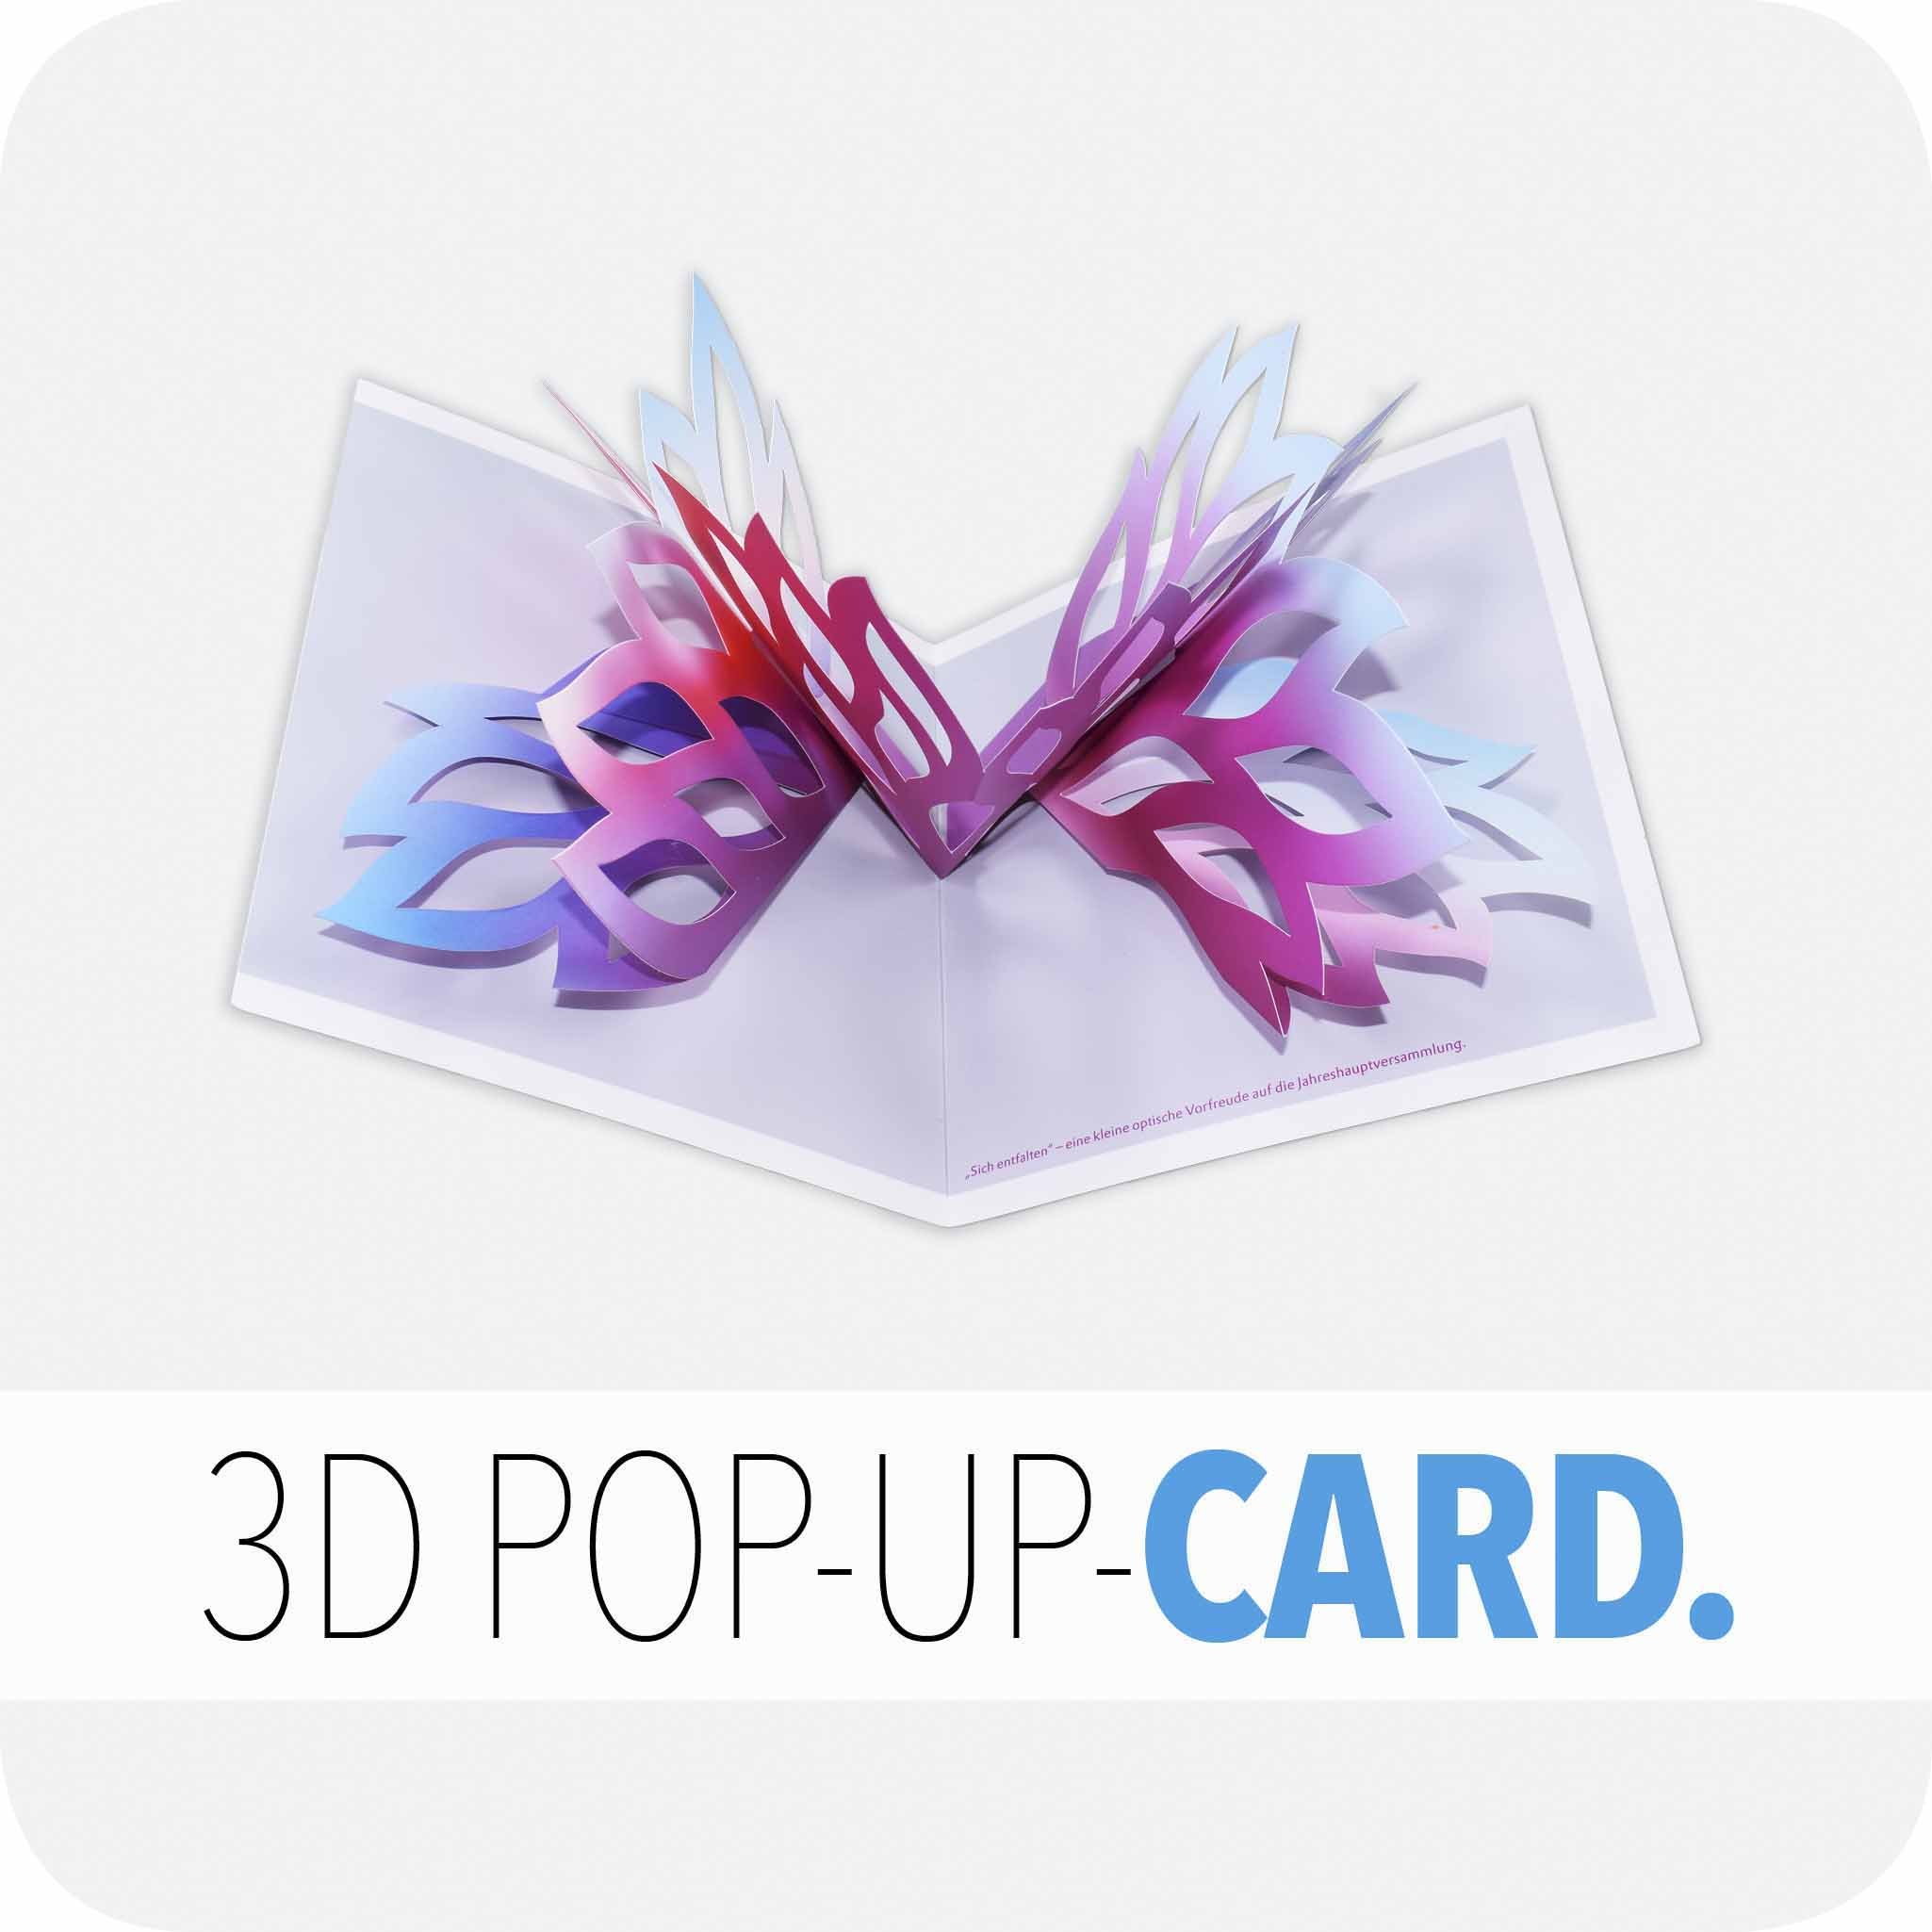 3D Pop-up card